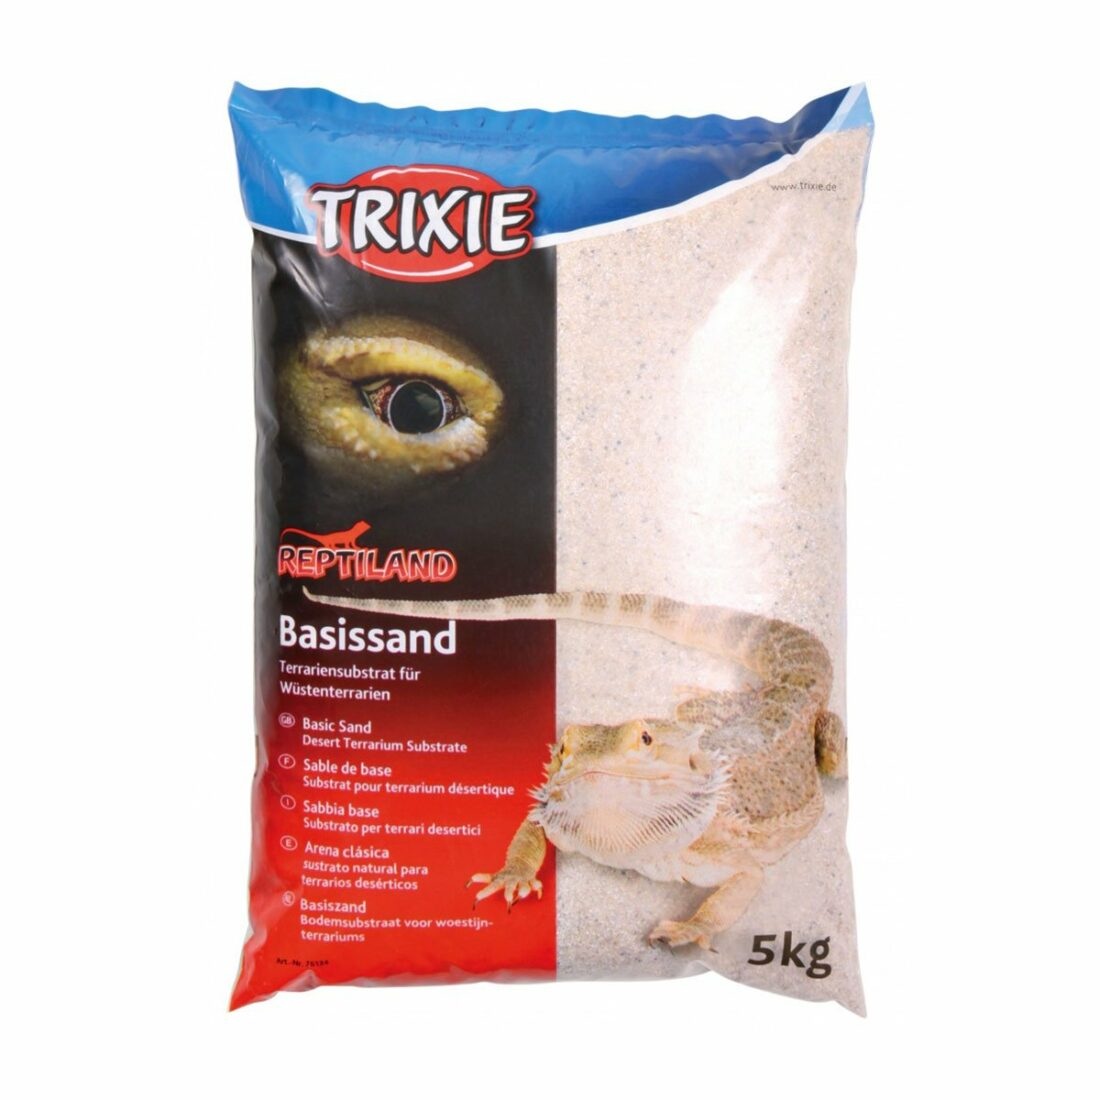 Trixie základový písek pro pouštní terária 5